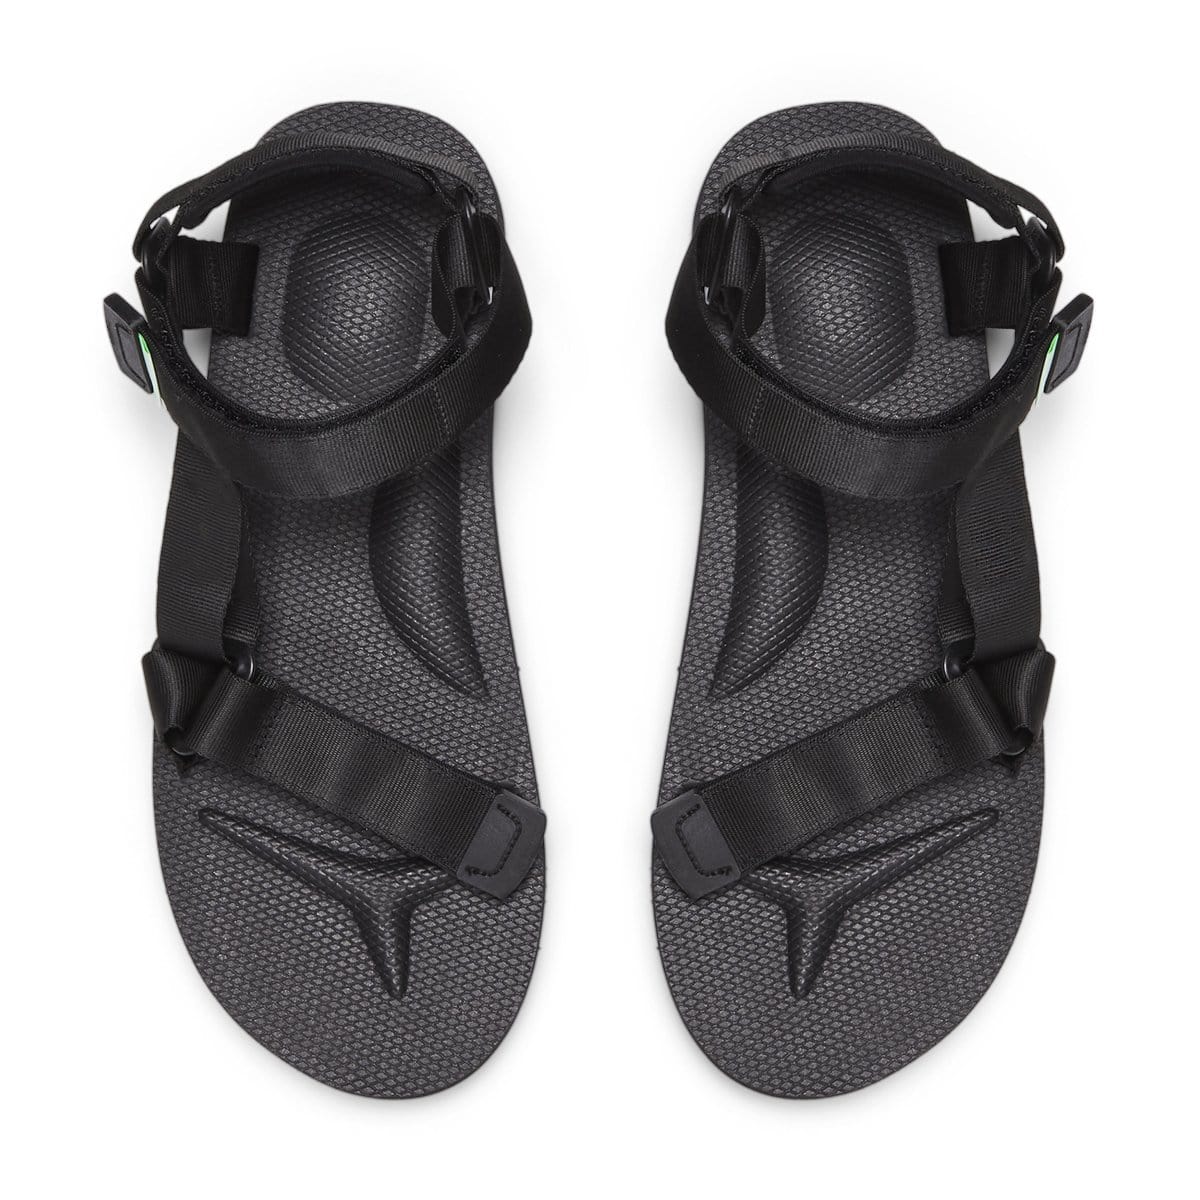 Suicoke DEPA-Cab strap sandals - Black